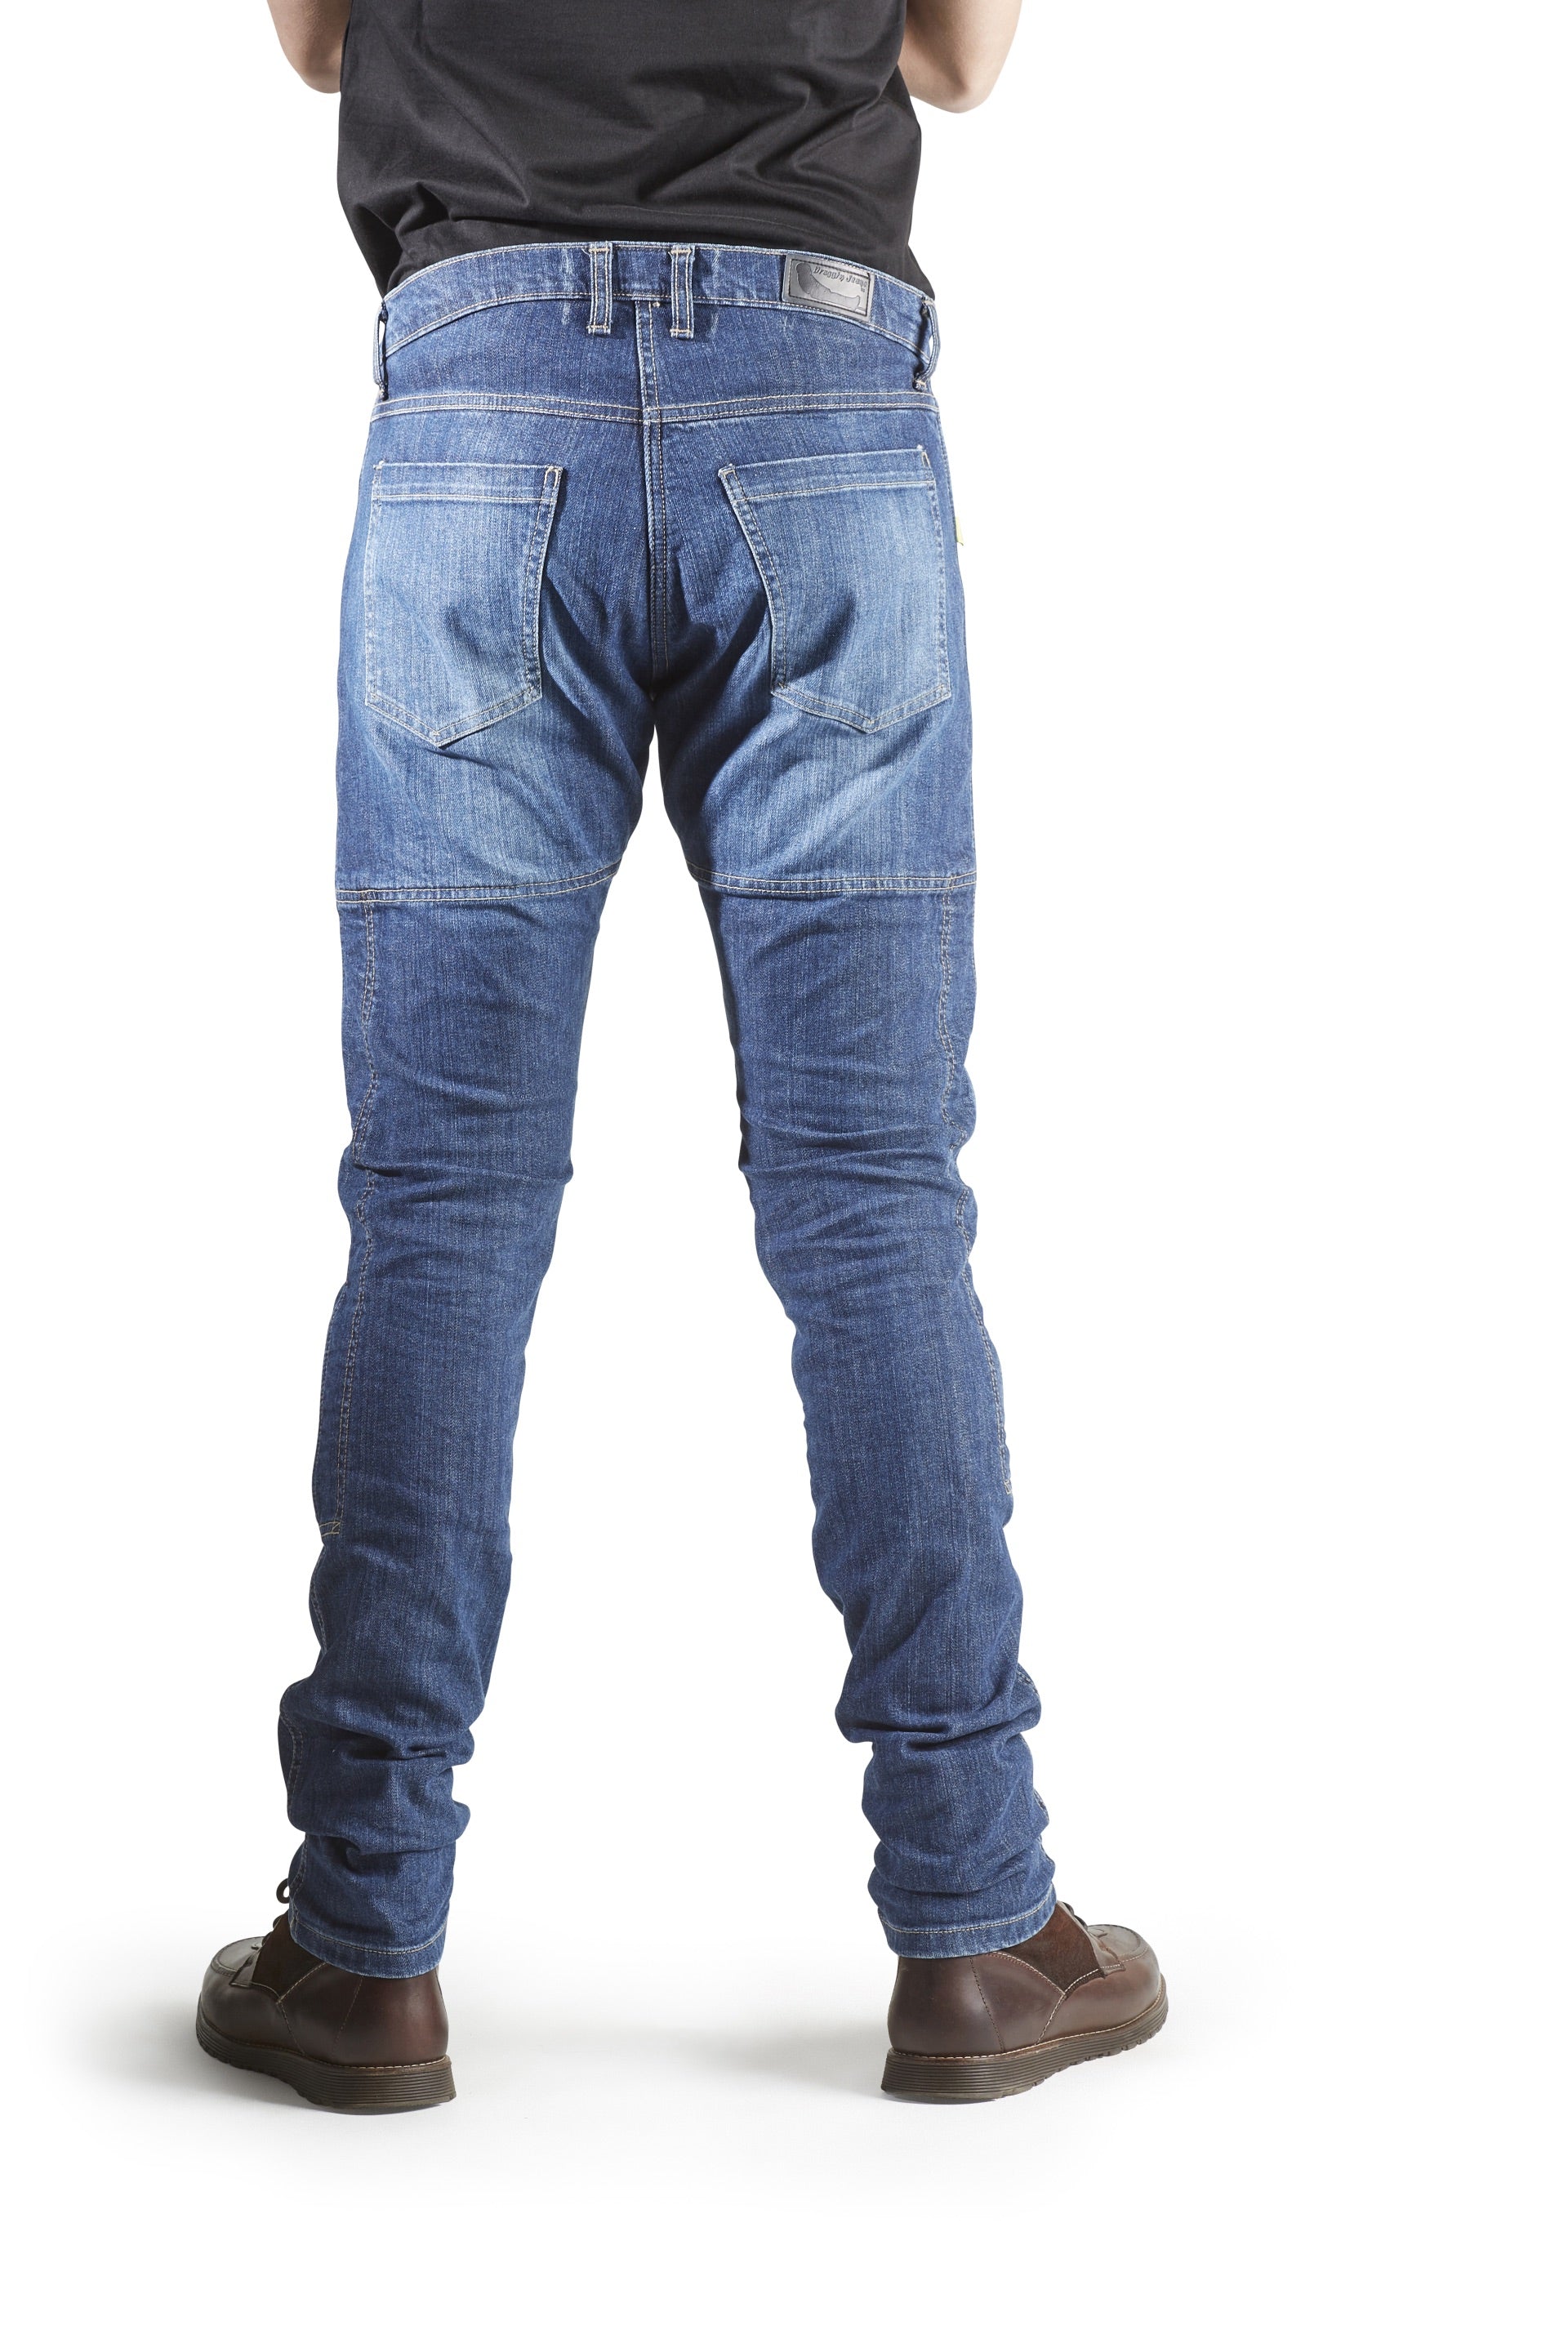 Jeans, Biker by Draggin Jeans